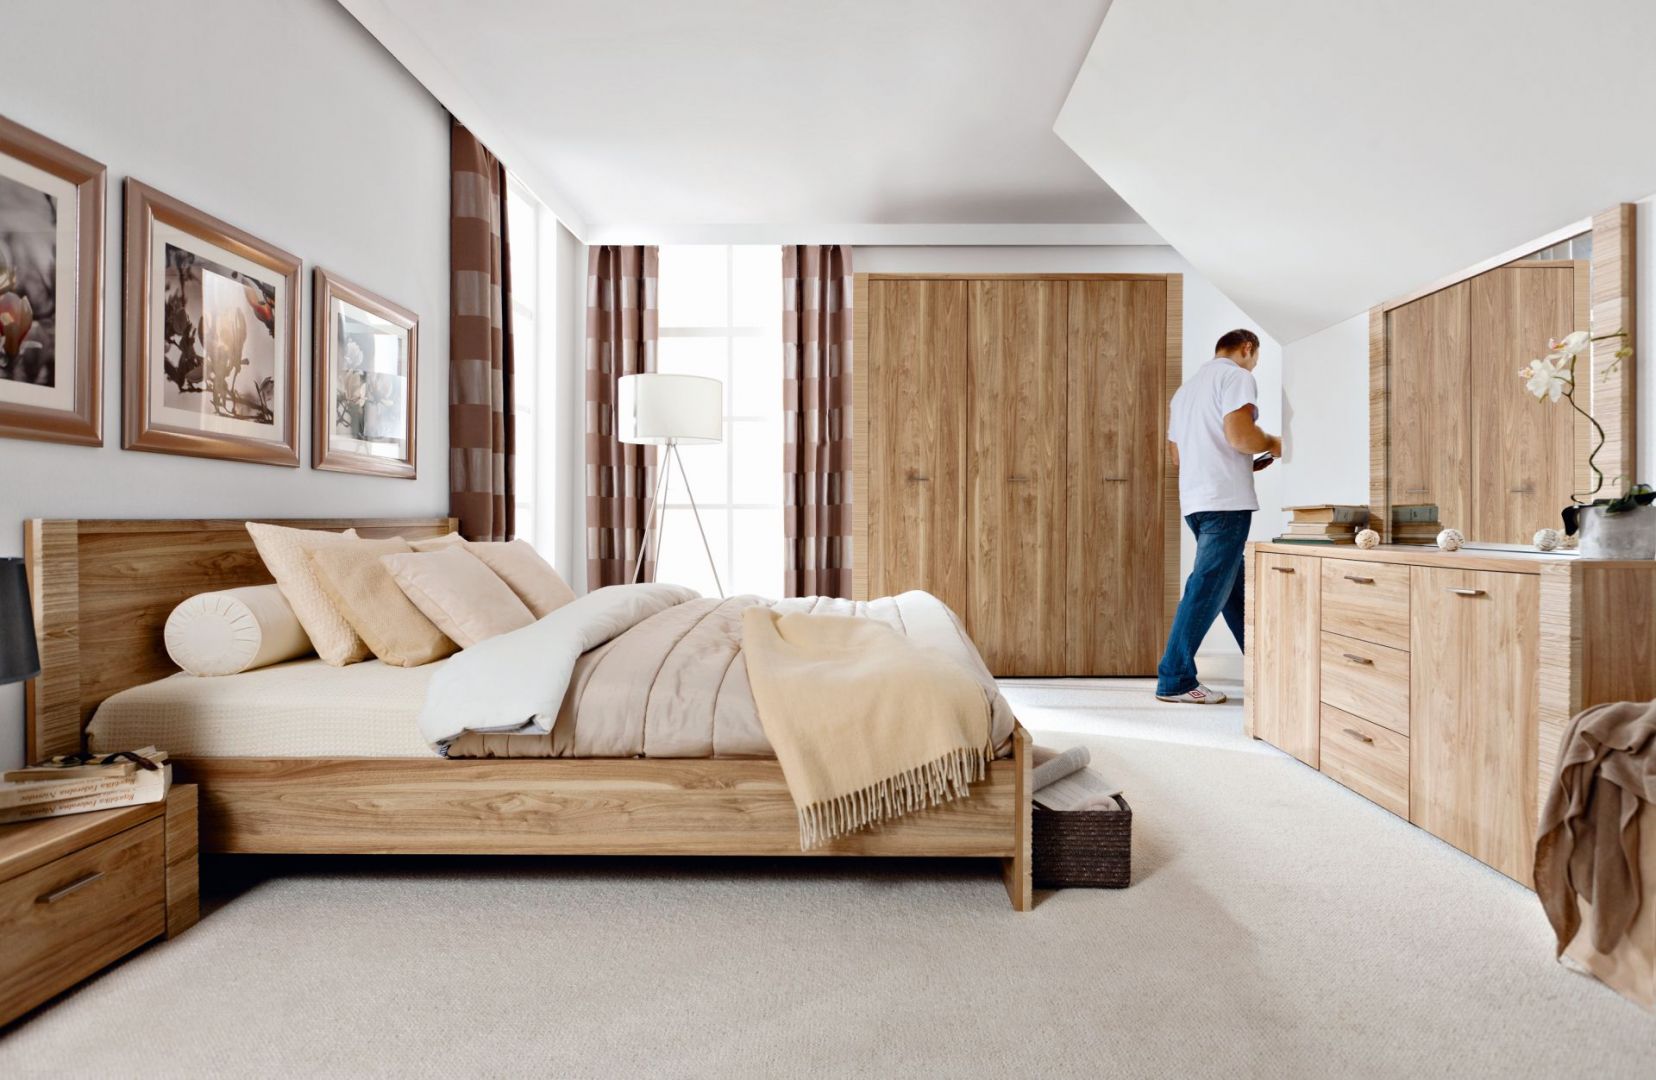 Meble do sypialni Raflo charakteryzują się delikatnym, jasnym odcieniem drewna i zdobionymi bokami brył. Cena łóżka: 599 zł. Fot. BRW 